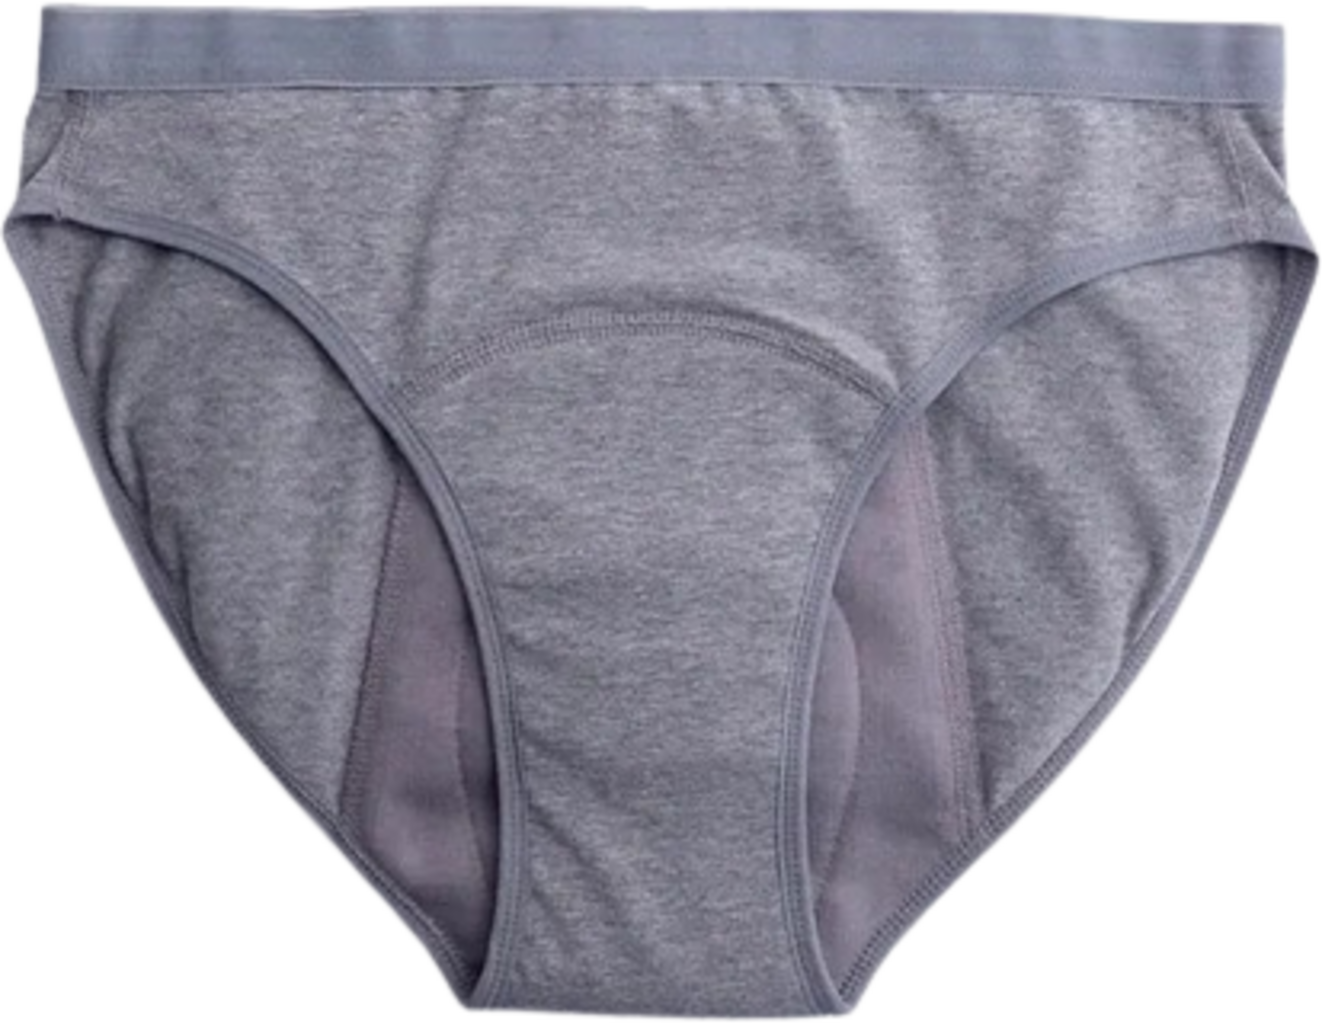 Imse Grey Bikini Period Underwear - Heavy Flow - Ecco Verde Online